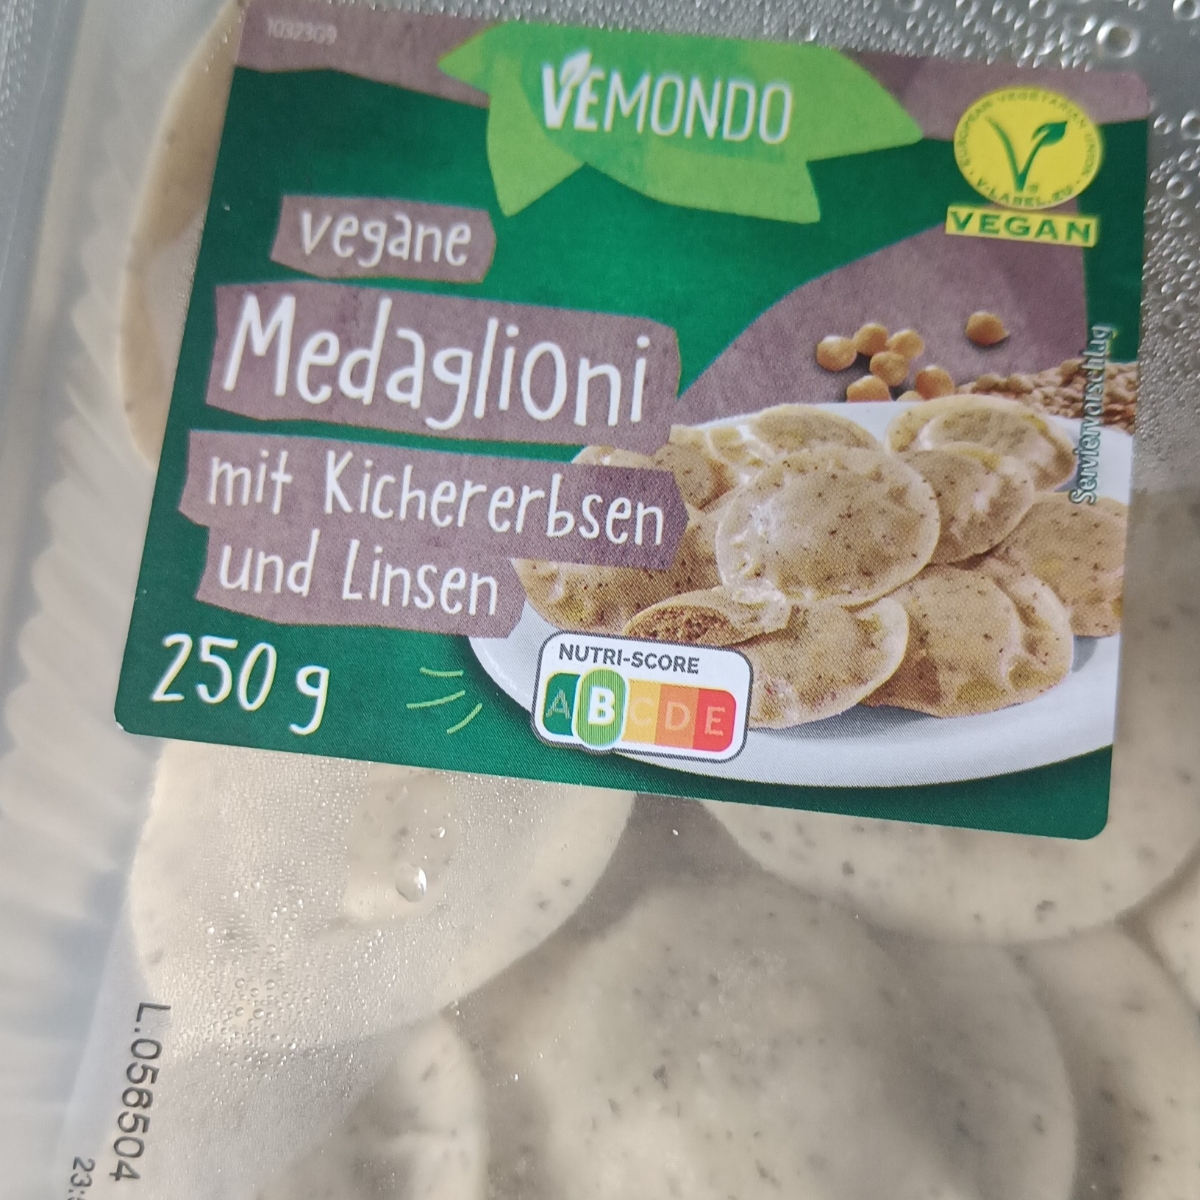 Vemondo Vegane Medaglioni mit Kichererbsen und Linsen Review | abillion